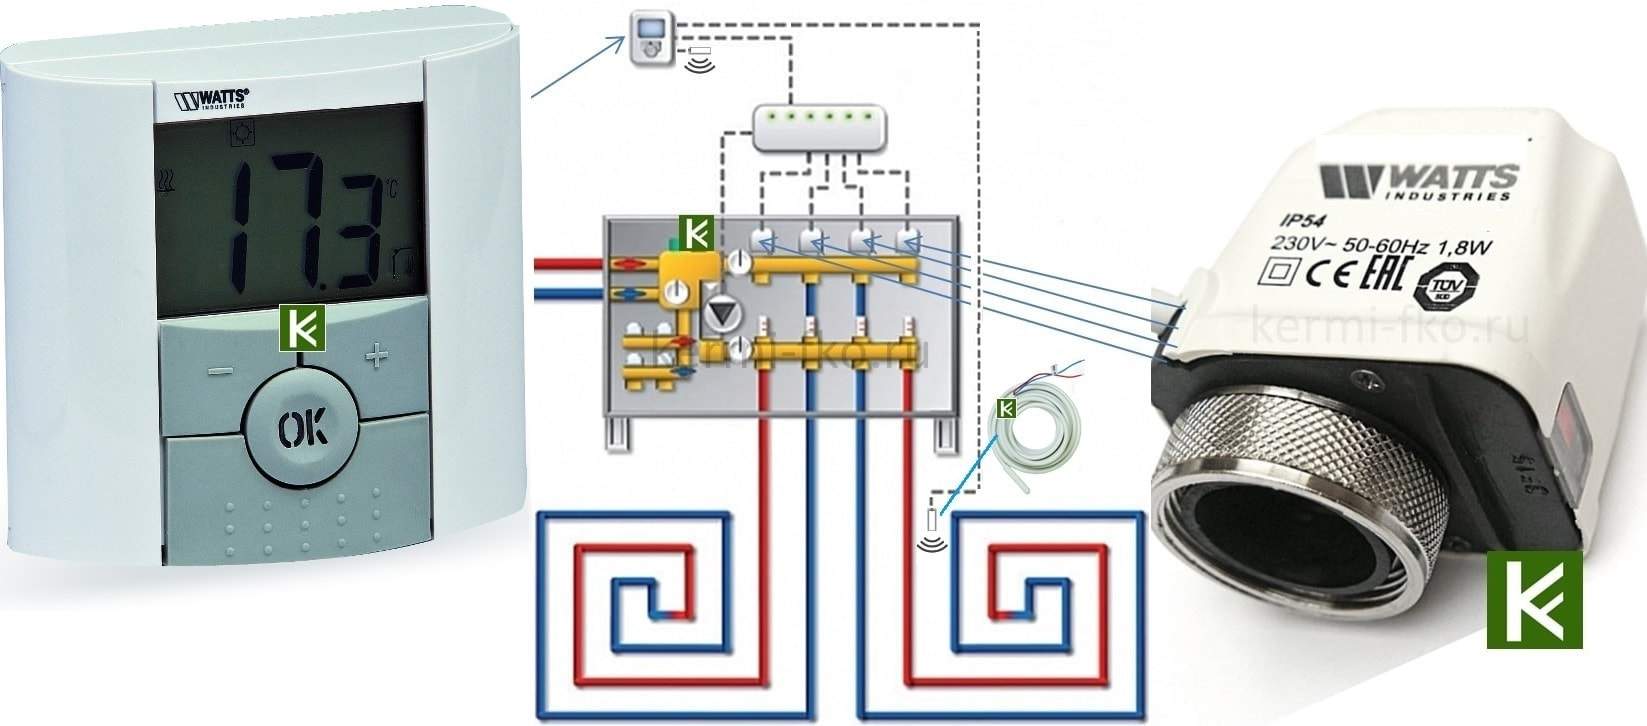 Автоматическая заслонка для вентиляции на базе arduino | блог евгения николаенко